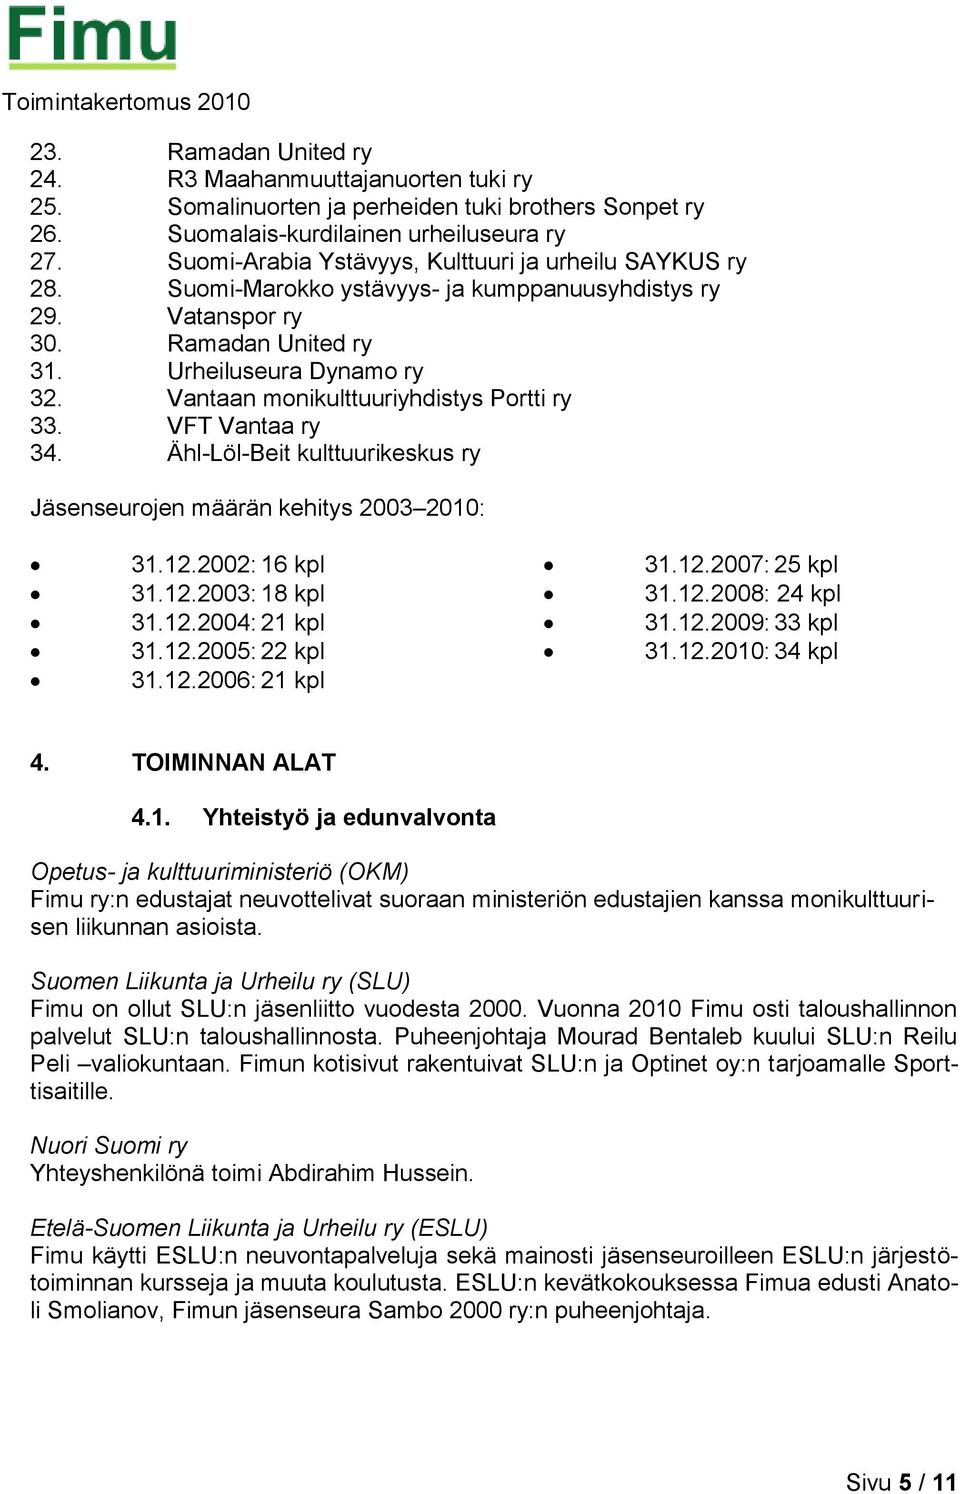 Vantaan monikulttuuriyhdistys Portti ry 33. VFT Vantaa ry 34. Ähl-Löl-Beit kulttuurikeskus ry Jäsenseurojen määrän kehitys 2003 2010: 31.12.2002: 16 kpl 31.12.2003: 18 kpl 31.12.2004: 21 kpl 31.12.2005: 22 kpl 31.